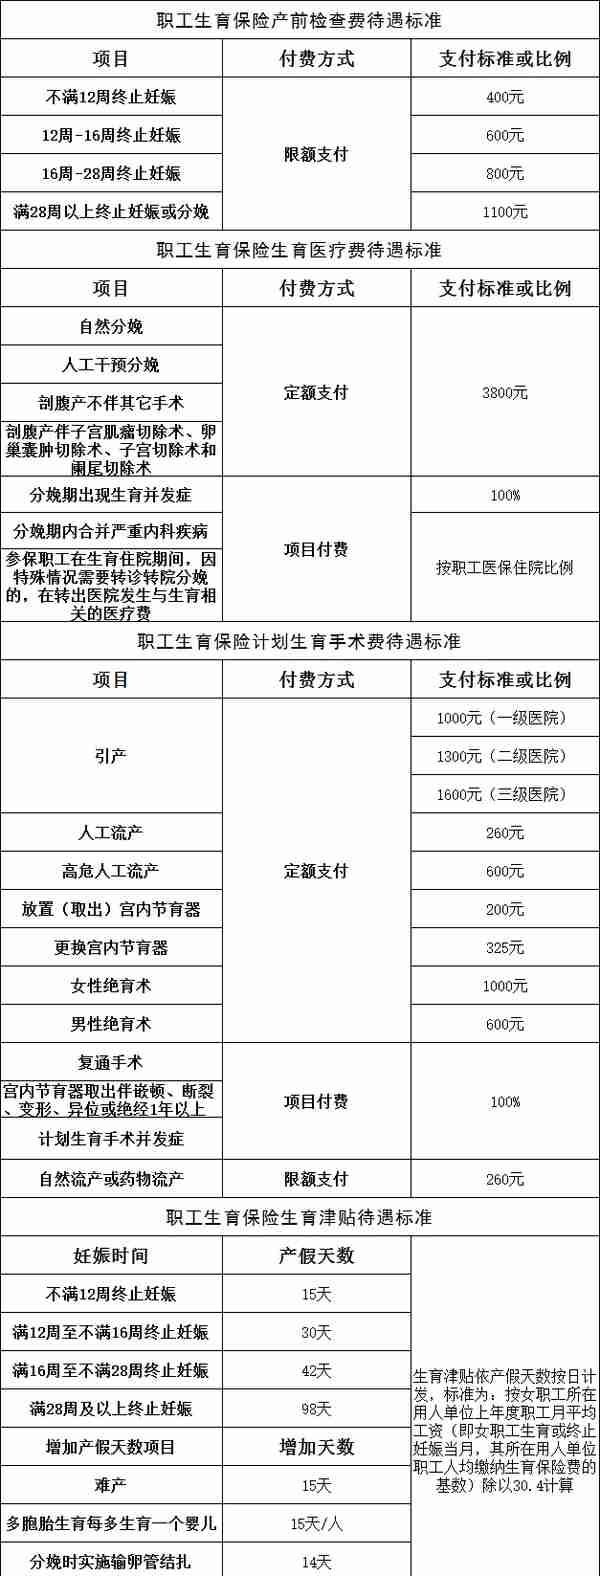 2022年天津市医疗保险政策，涵盖城镇职工与城乡居民